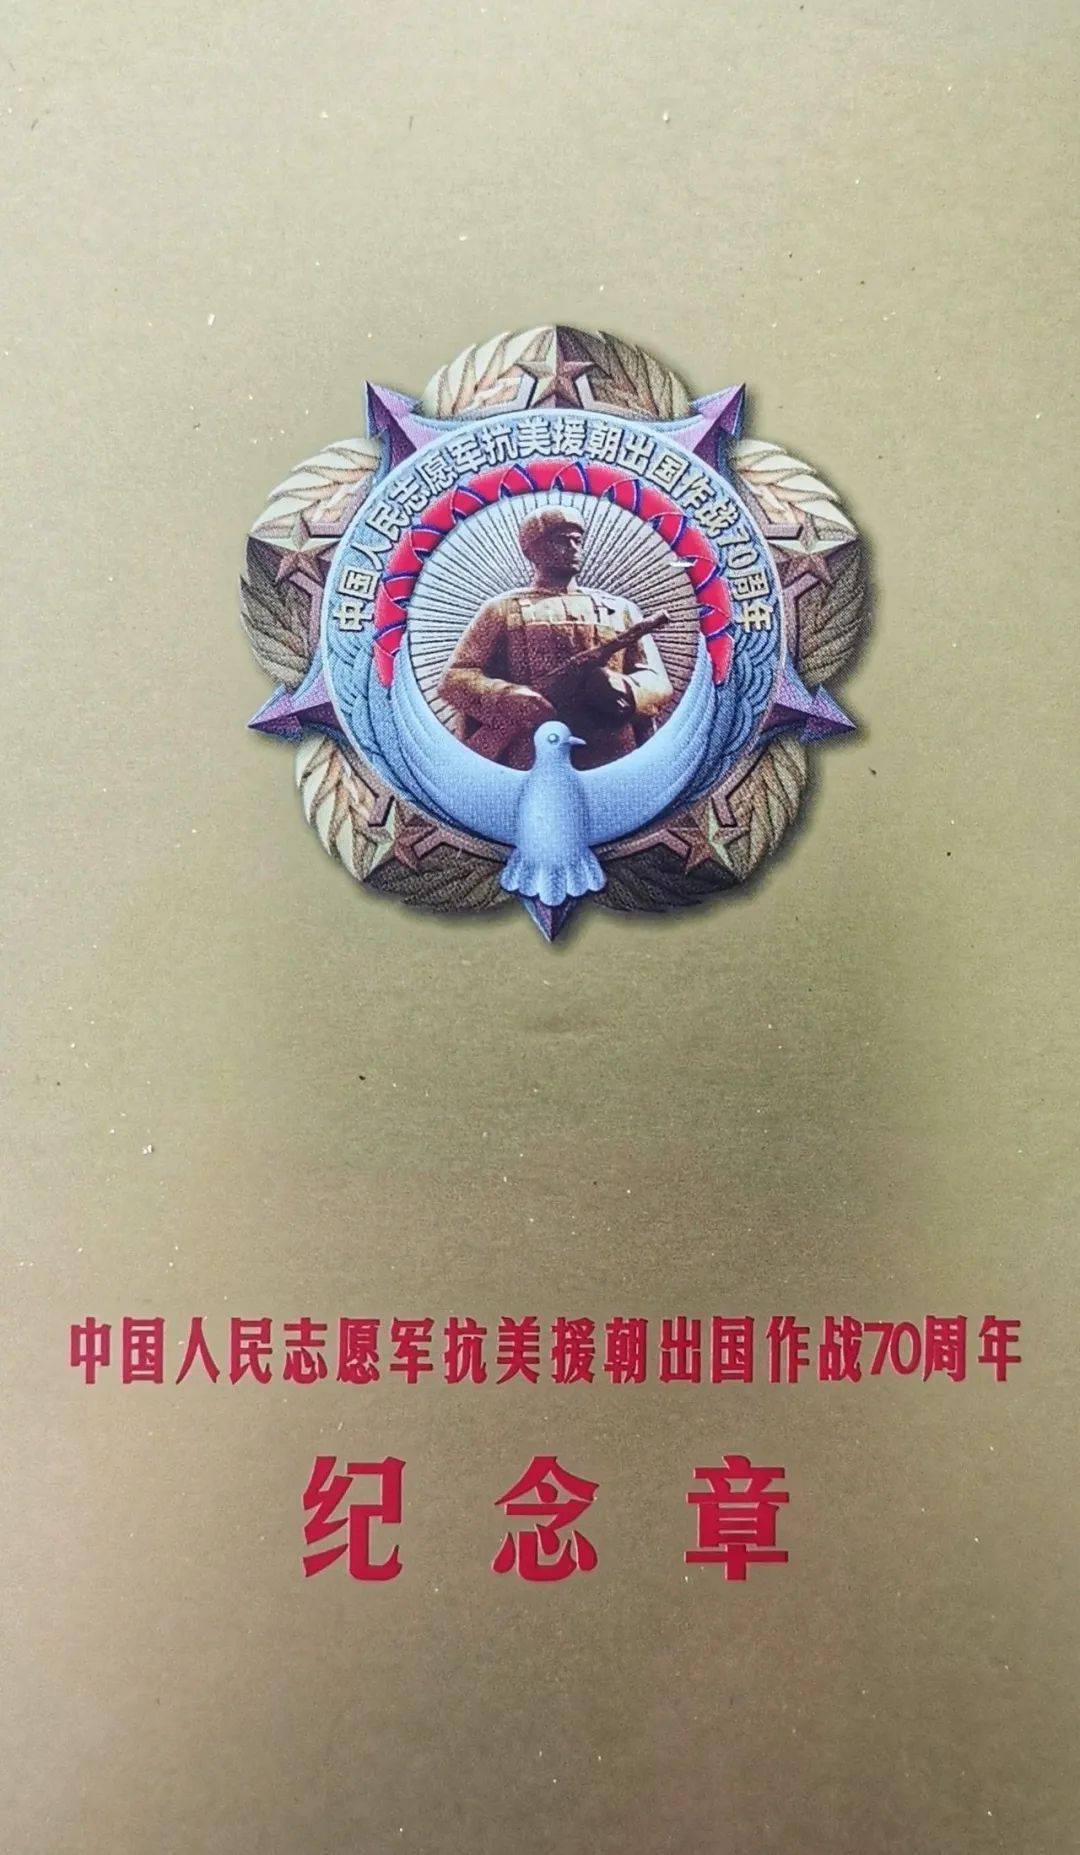 13名老同志获颁抗美援朝70周年纪念章